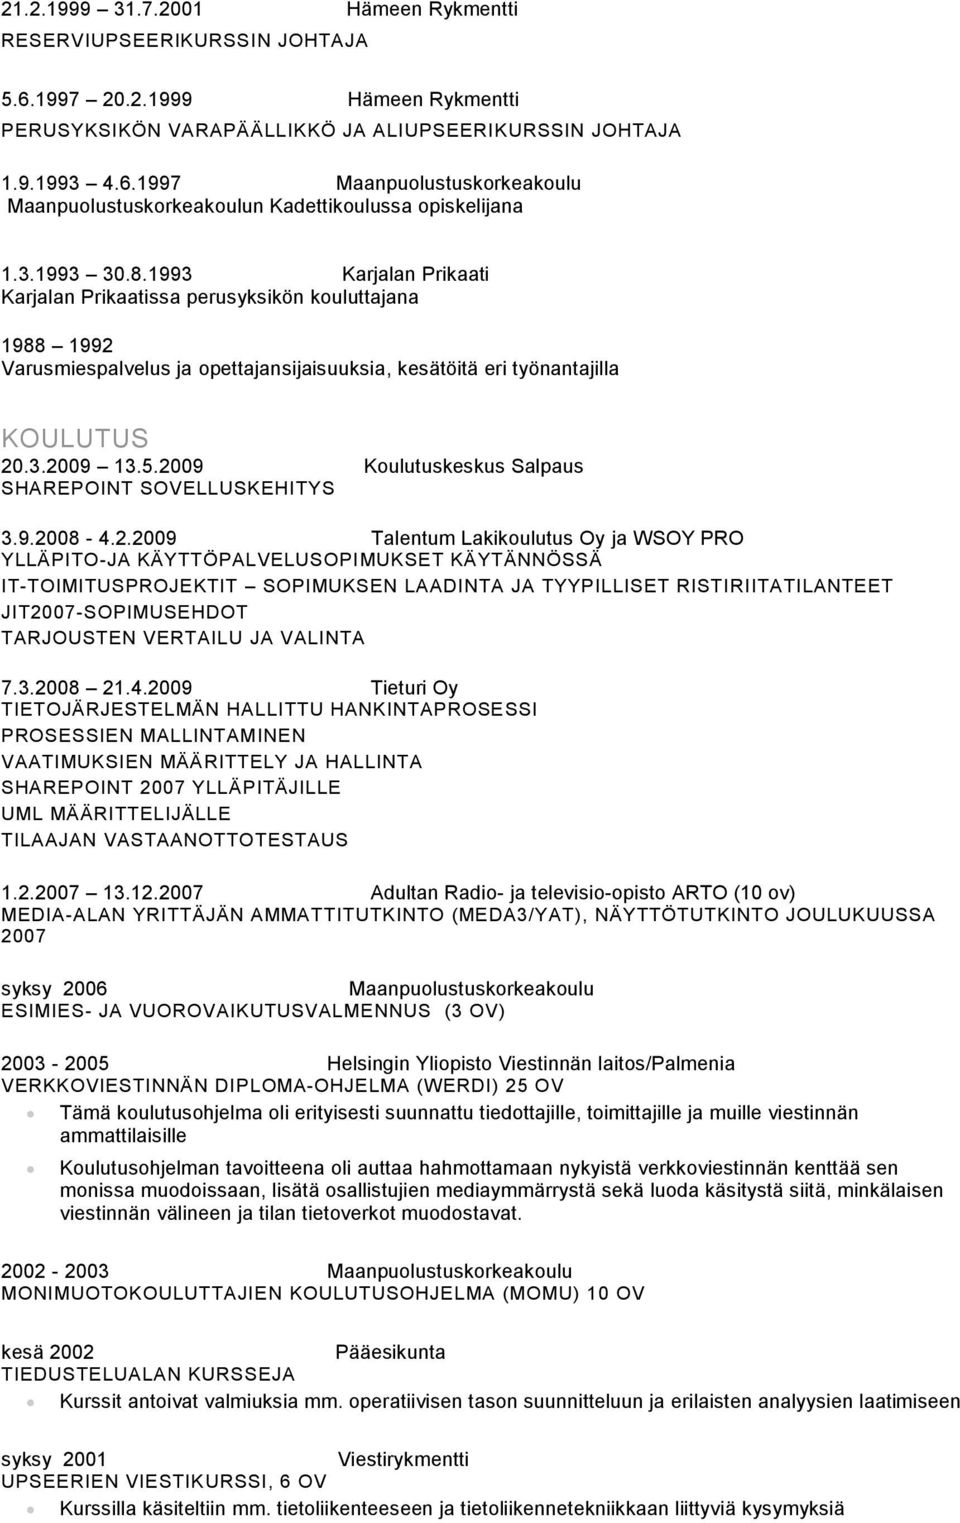 2009 Koulutuskeskus Salpaus SHAREPOINT SOVELLUSKEHITYS 3.9.2008-4.2.2009 Talentum Lakikoulutus Oy ja WSOY PRO YLLÄPITO-JA KÄYTTÖPALVELUSOPIMUKSET KÄYTÄNNÖSSÄ IT-TOIMITUSPROJEKTIT SOPIMUKSEN LAADINTA